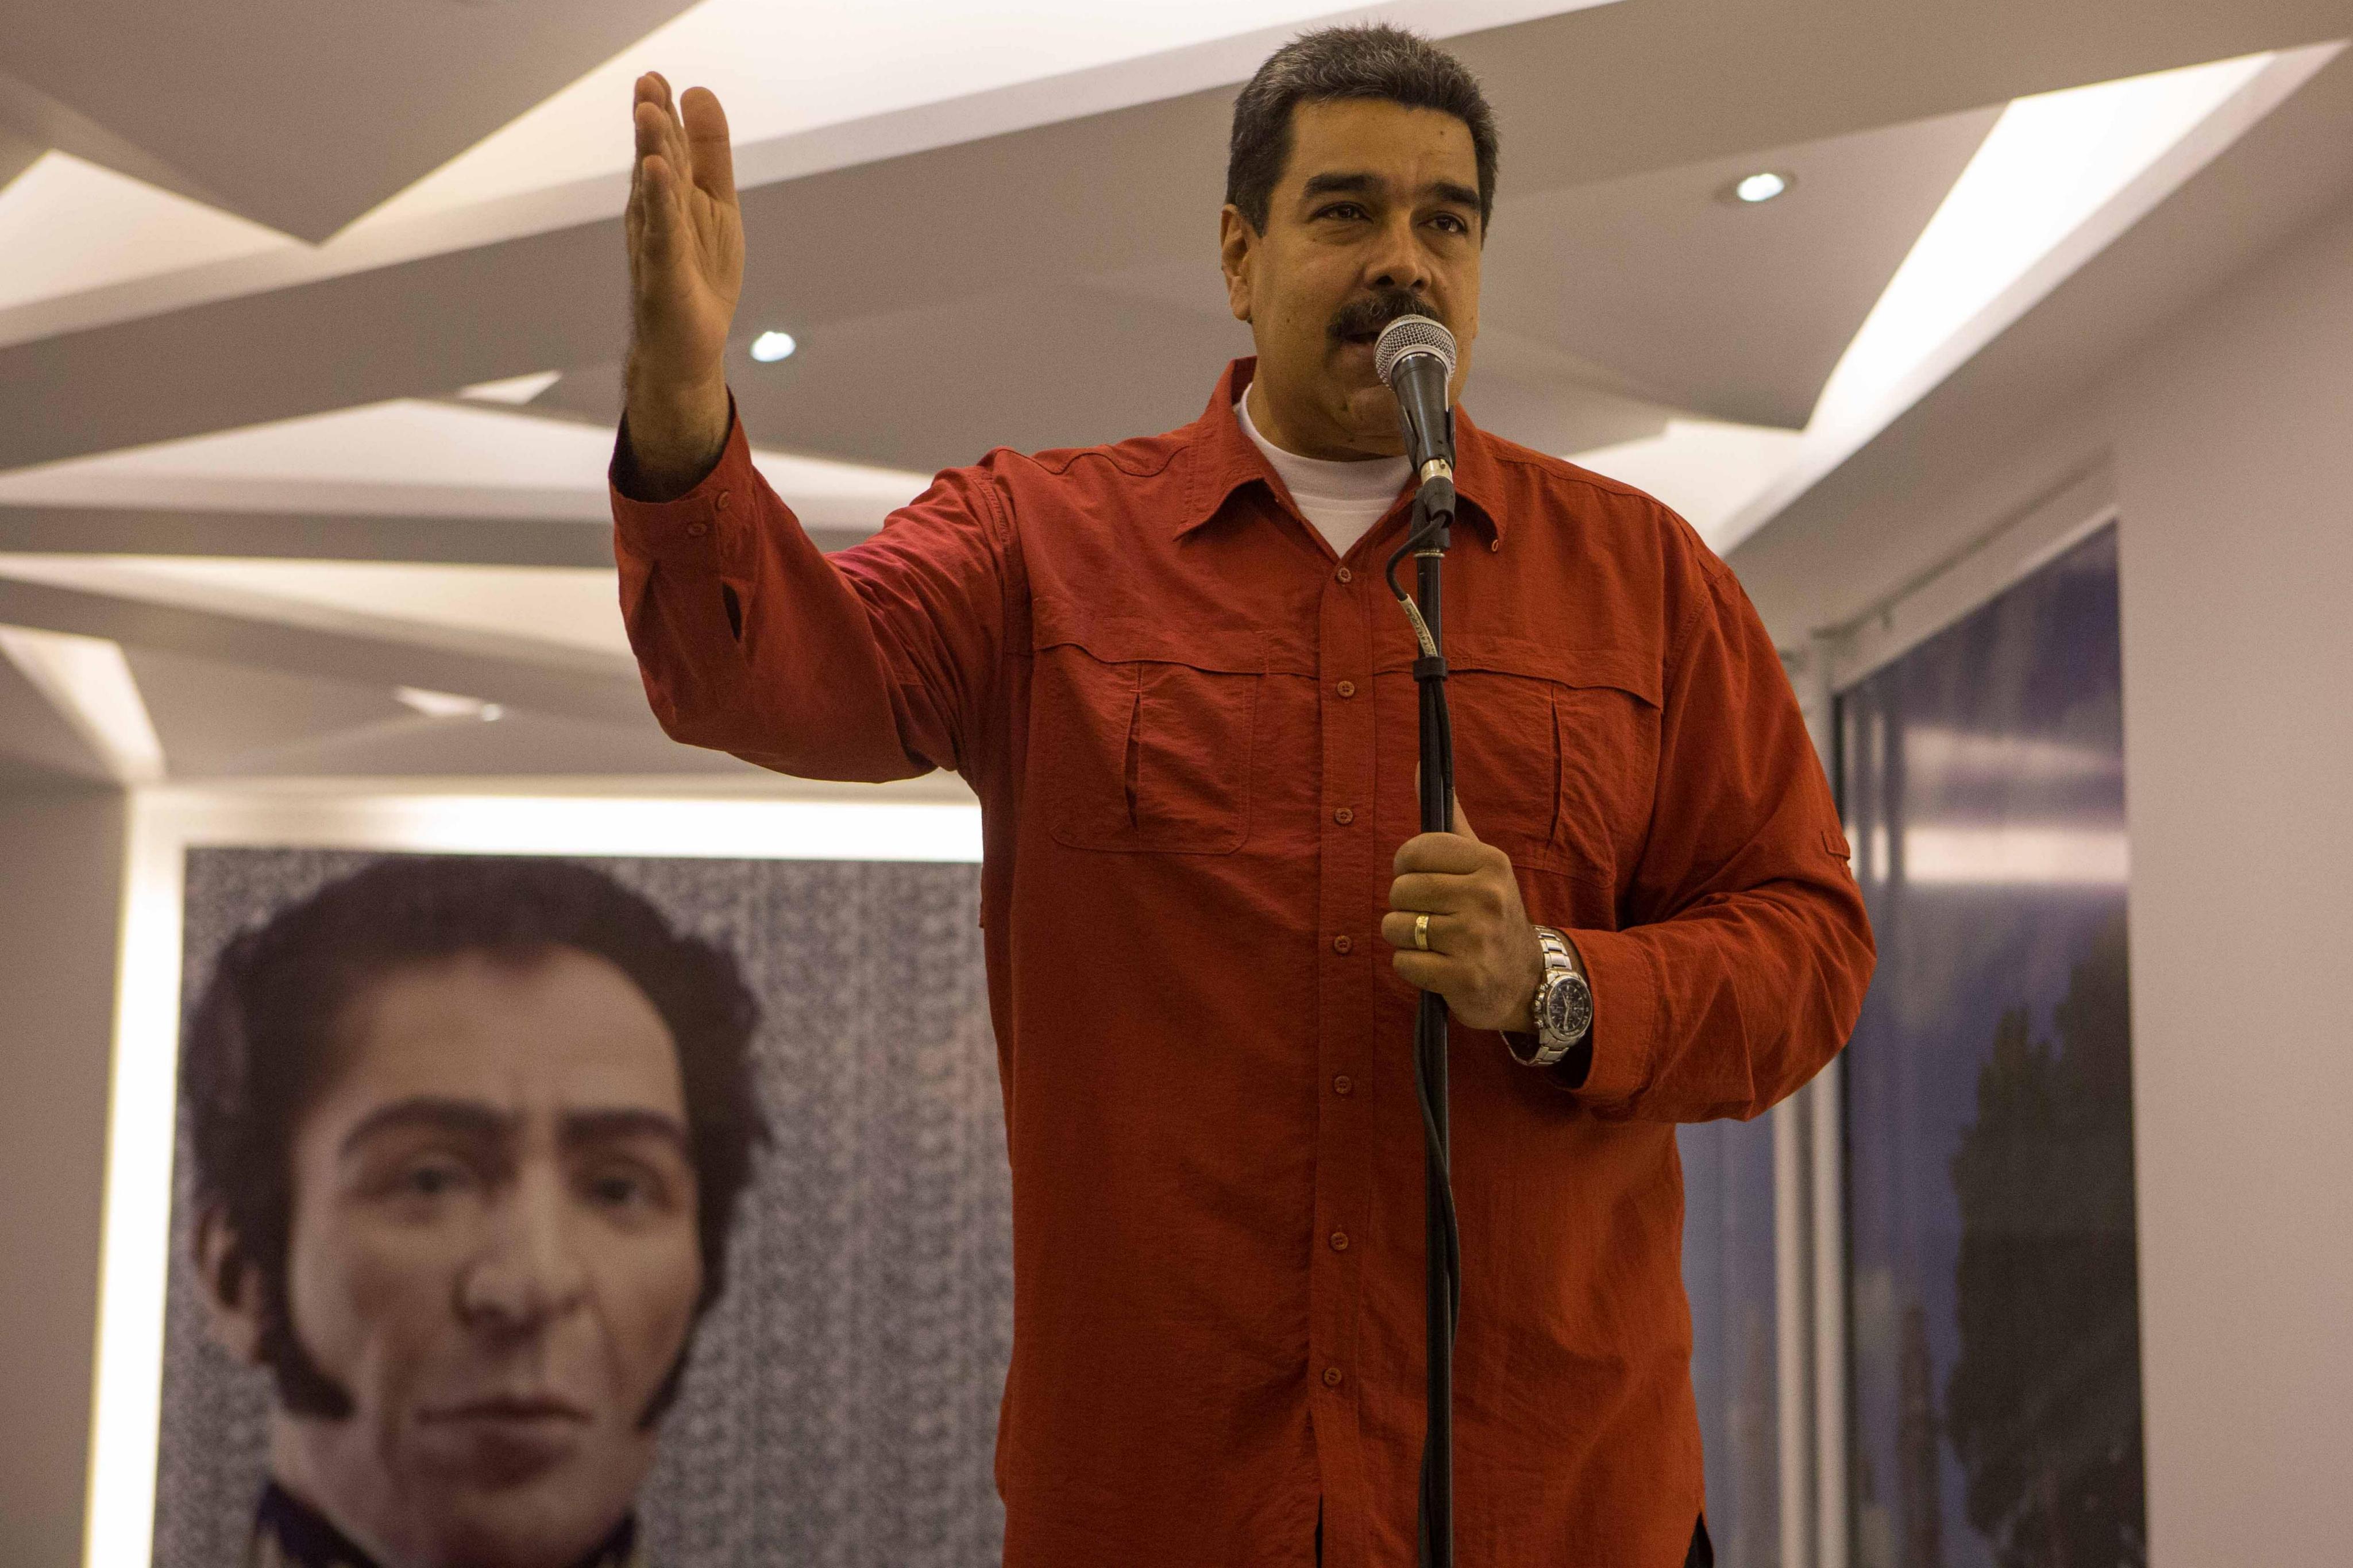 Opositor venezolano en Perú dice que Maduro terminará como "El Chapo" Guzmán